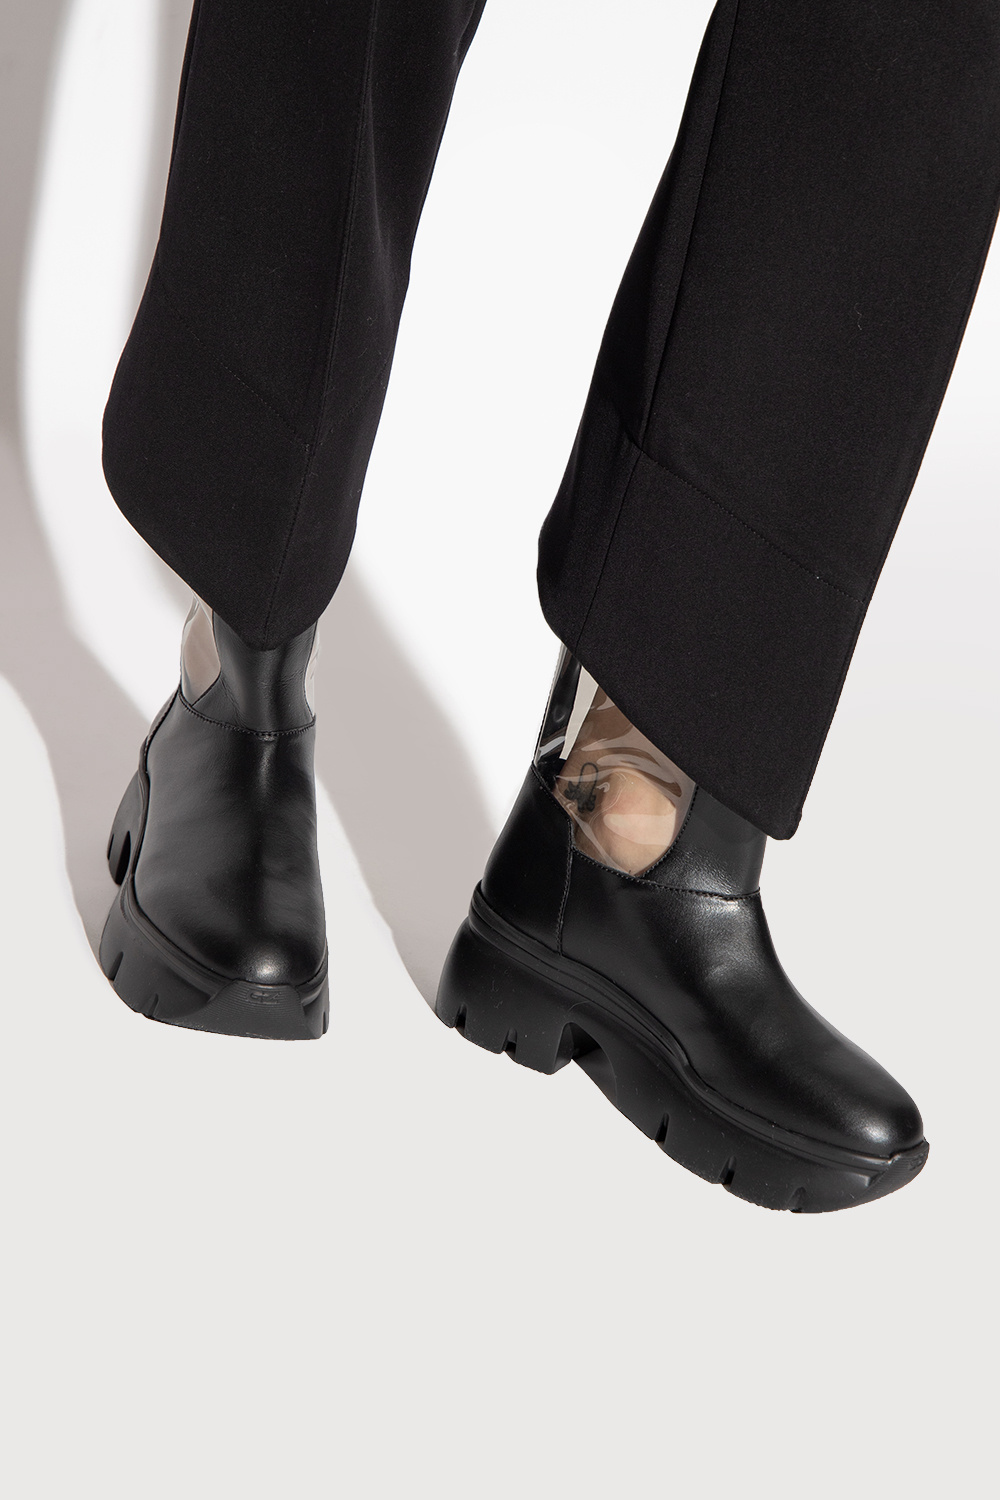 IetpShops | zapatillas de amortiguación media talla 39 amarillas baratas menos de 60 | Shoes | Giuseppe Zanotti 'Apocalypse Riot' transparent boots